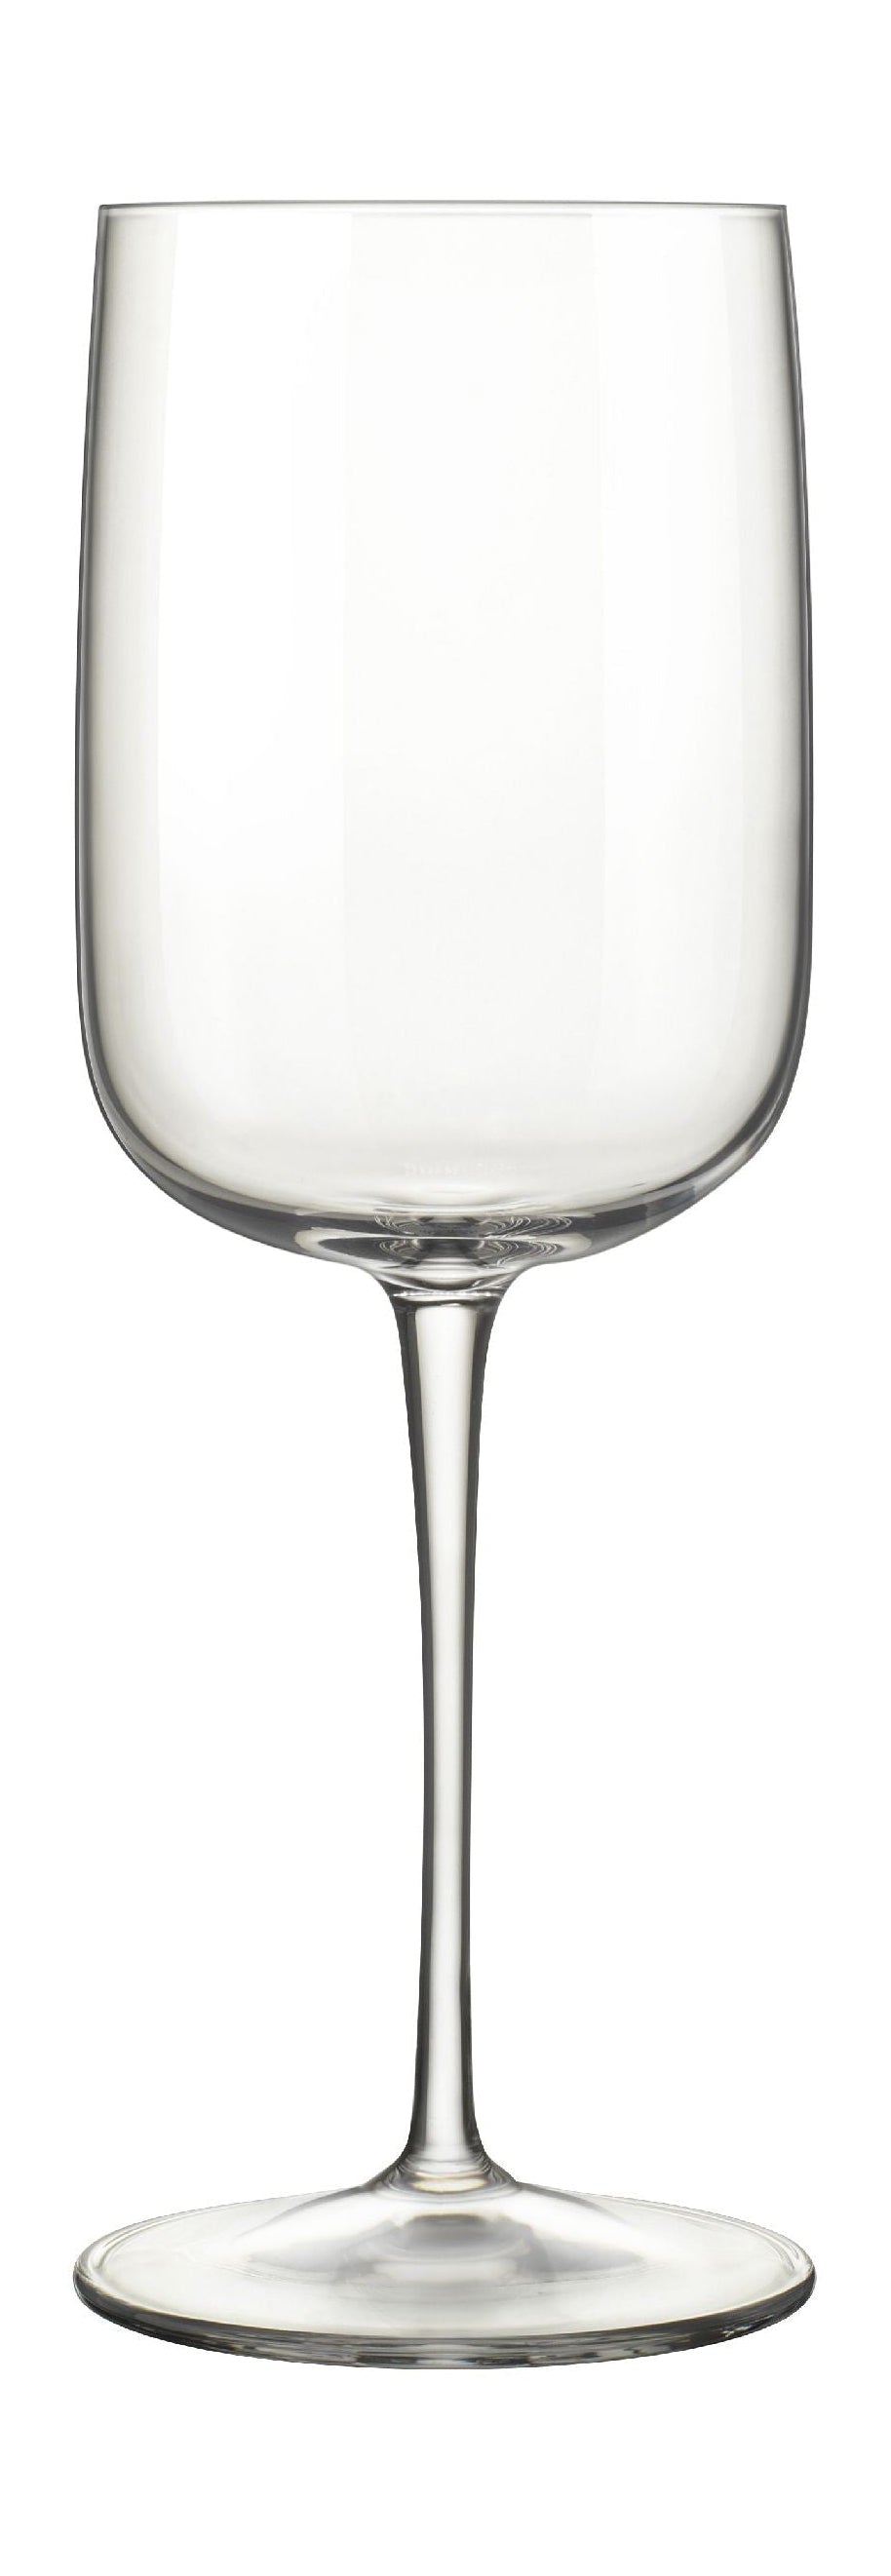 Luigi Bormioli Vinalia白酒玻璃37 Cl 6 PC。